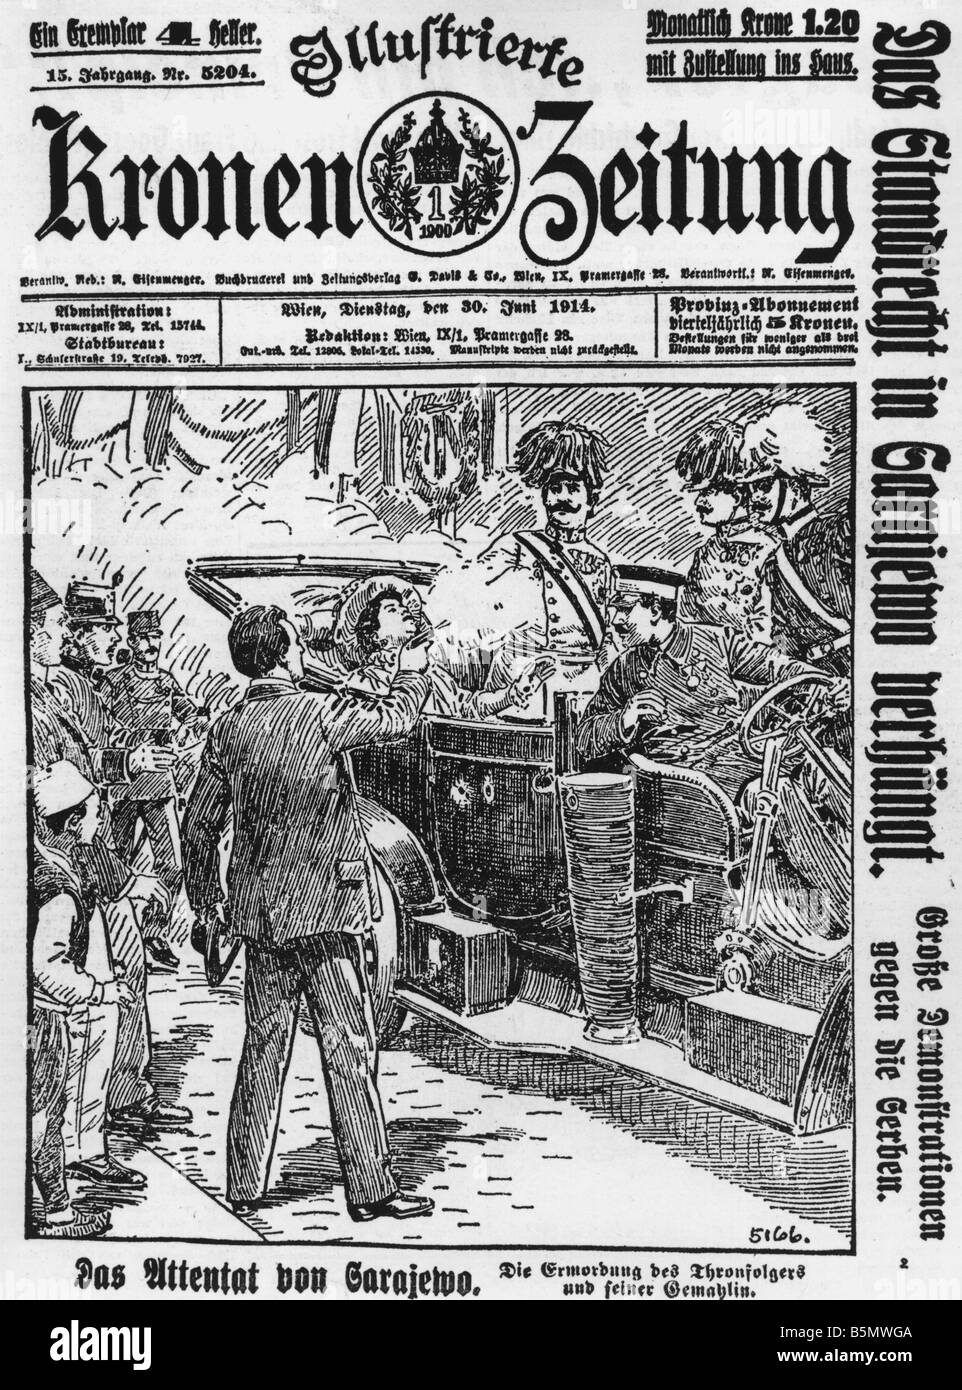 9OE 1914 6 28 A6 E Assass von Franz Ferdinand in Sarajevo Vorgeschichte des 1. Weltkrieges Assassinati auf des Austr Hung Erben der Thro Stockfoto